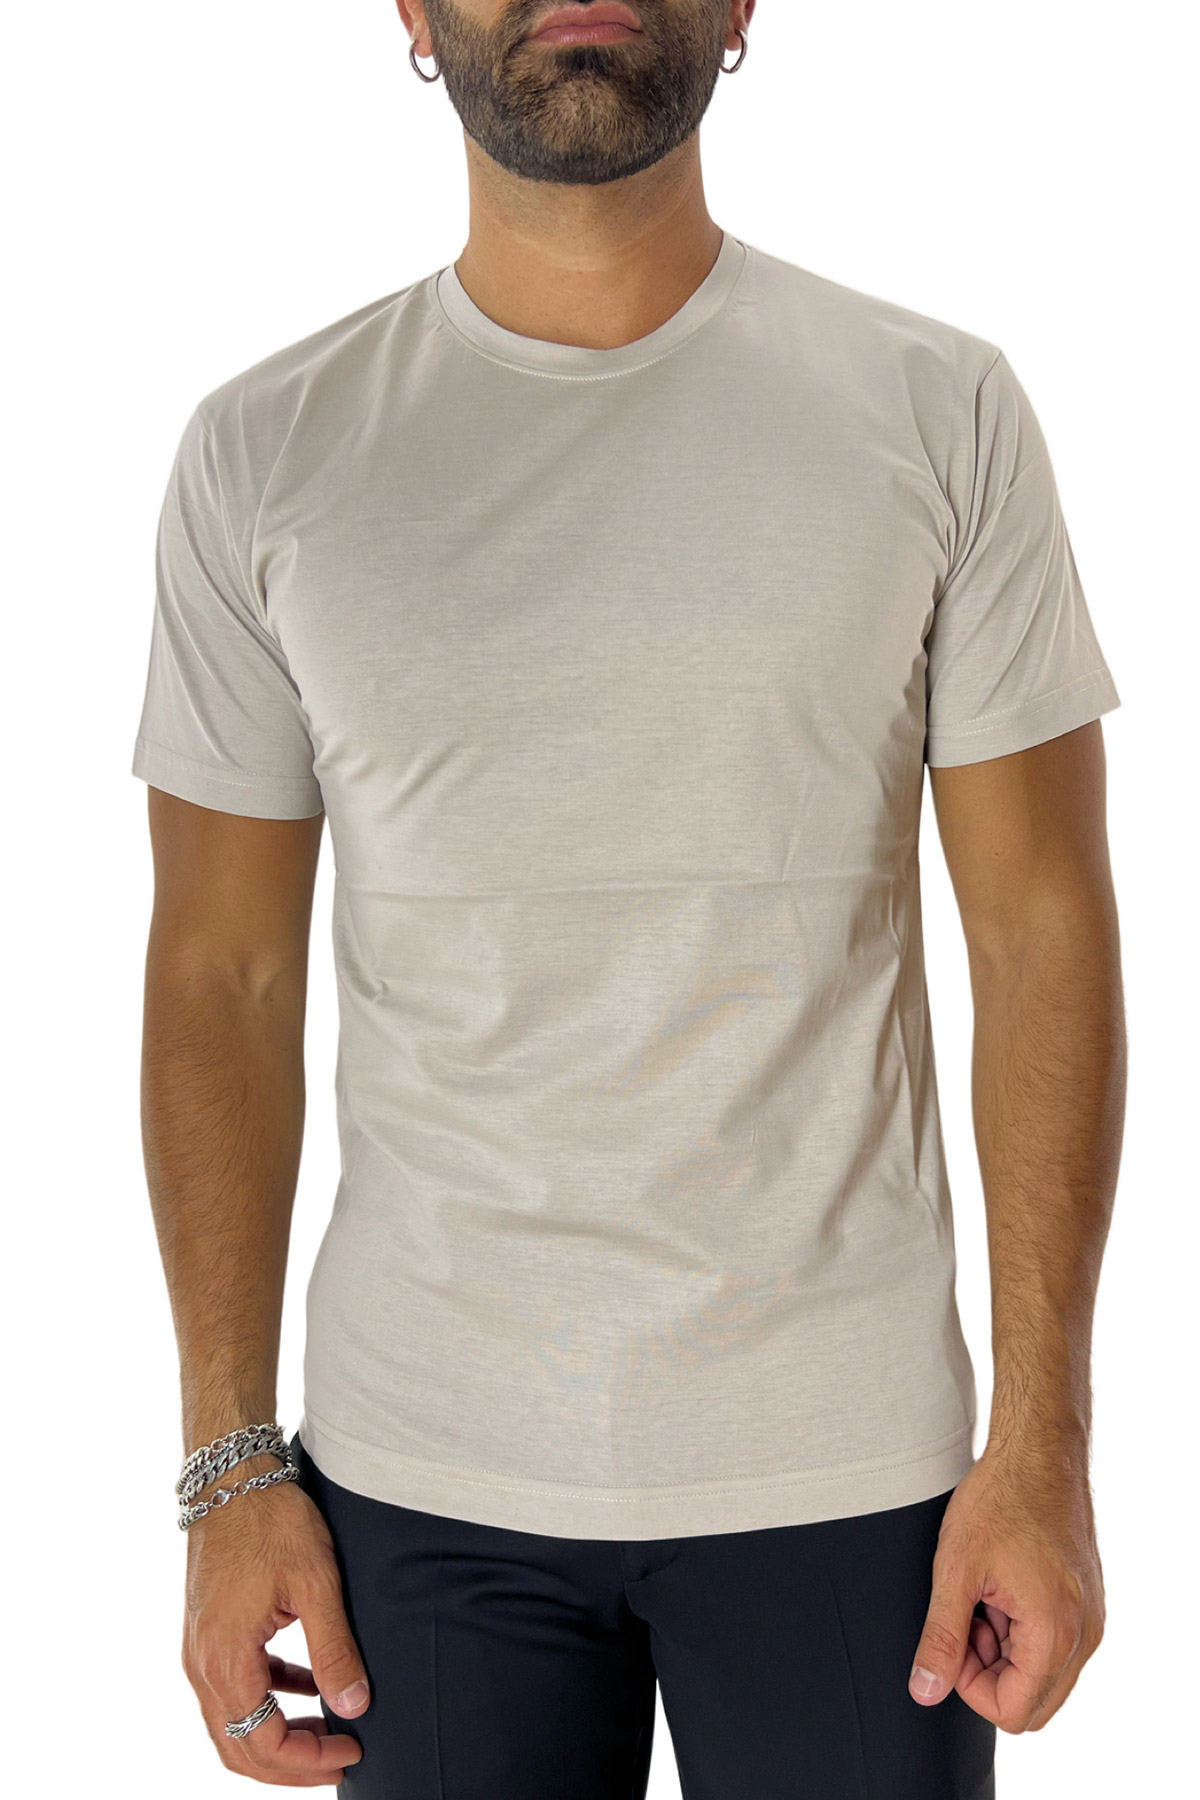 T-shirt da uomo beige in cotone 100% Filo di scozia slim fit tinta unita Made In Italy